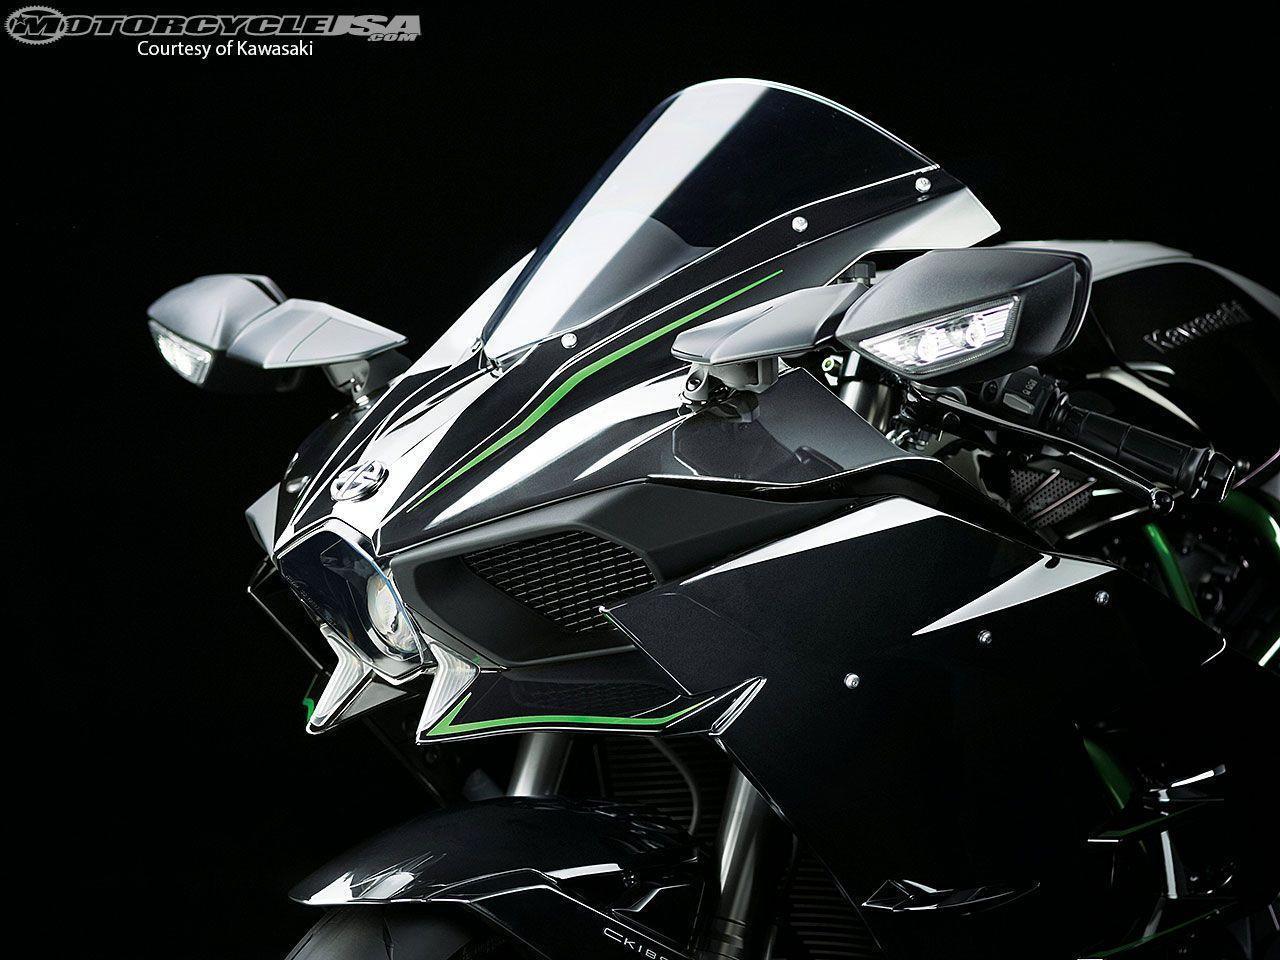 2015 Kawasaki Ninja H2 First Look Photos